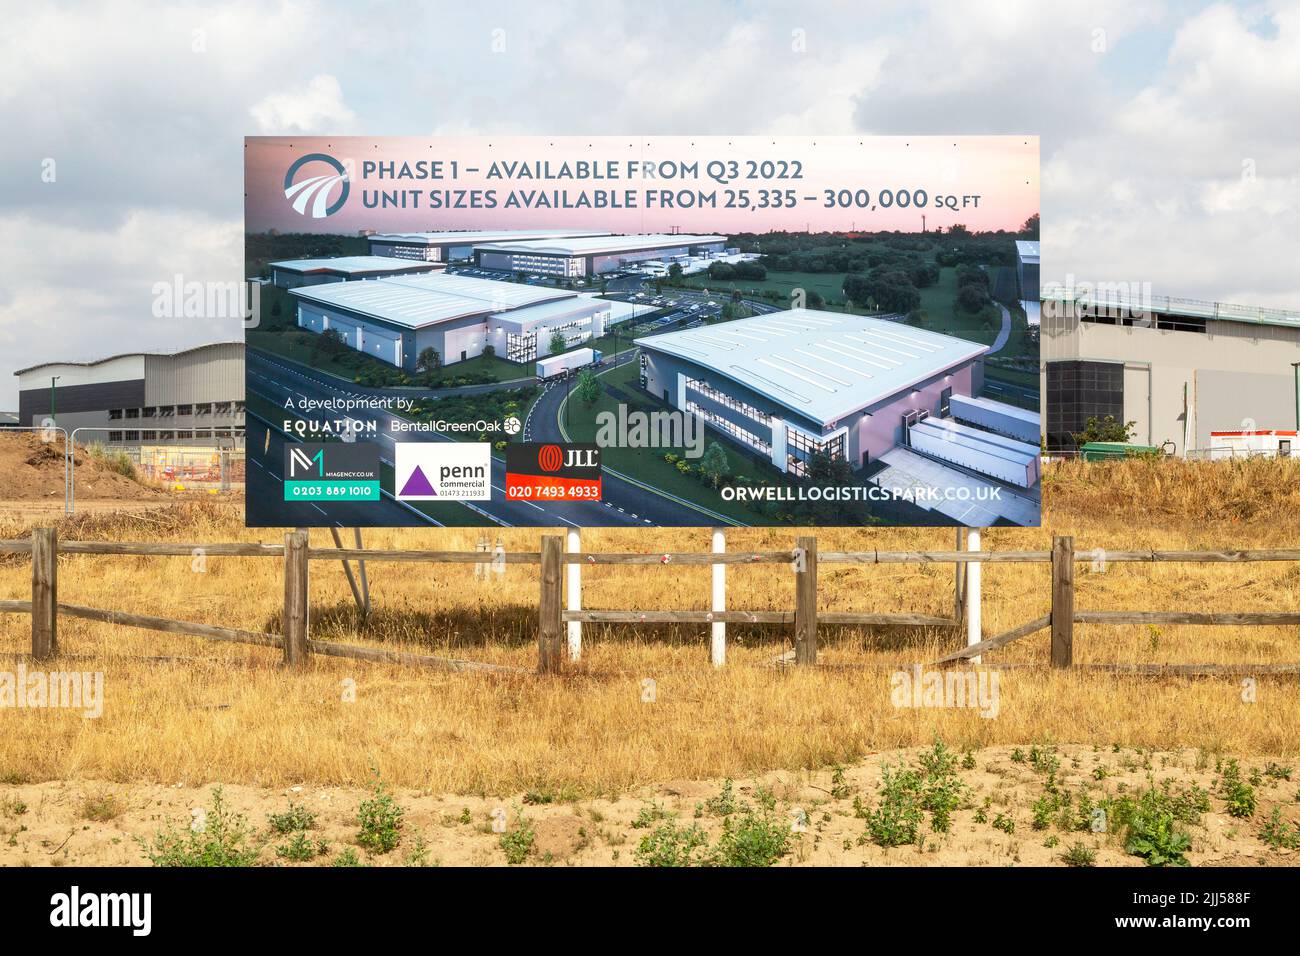 Agent immobilier panneau publicitaire panneau signe pour le développement de biens commerciaux, Orwell Logistics Park for Felixstowe, Ipswich, Suffolk, Angleterre, Royaume-Uni juillet 2022 Banque D'Images